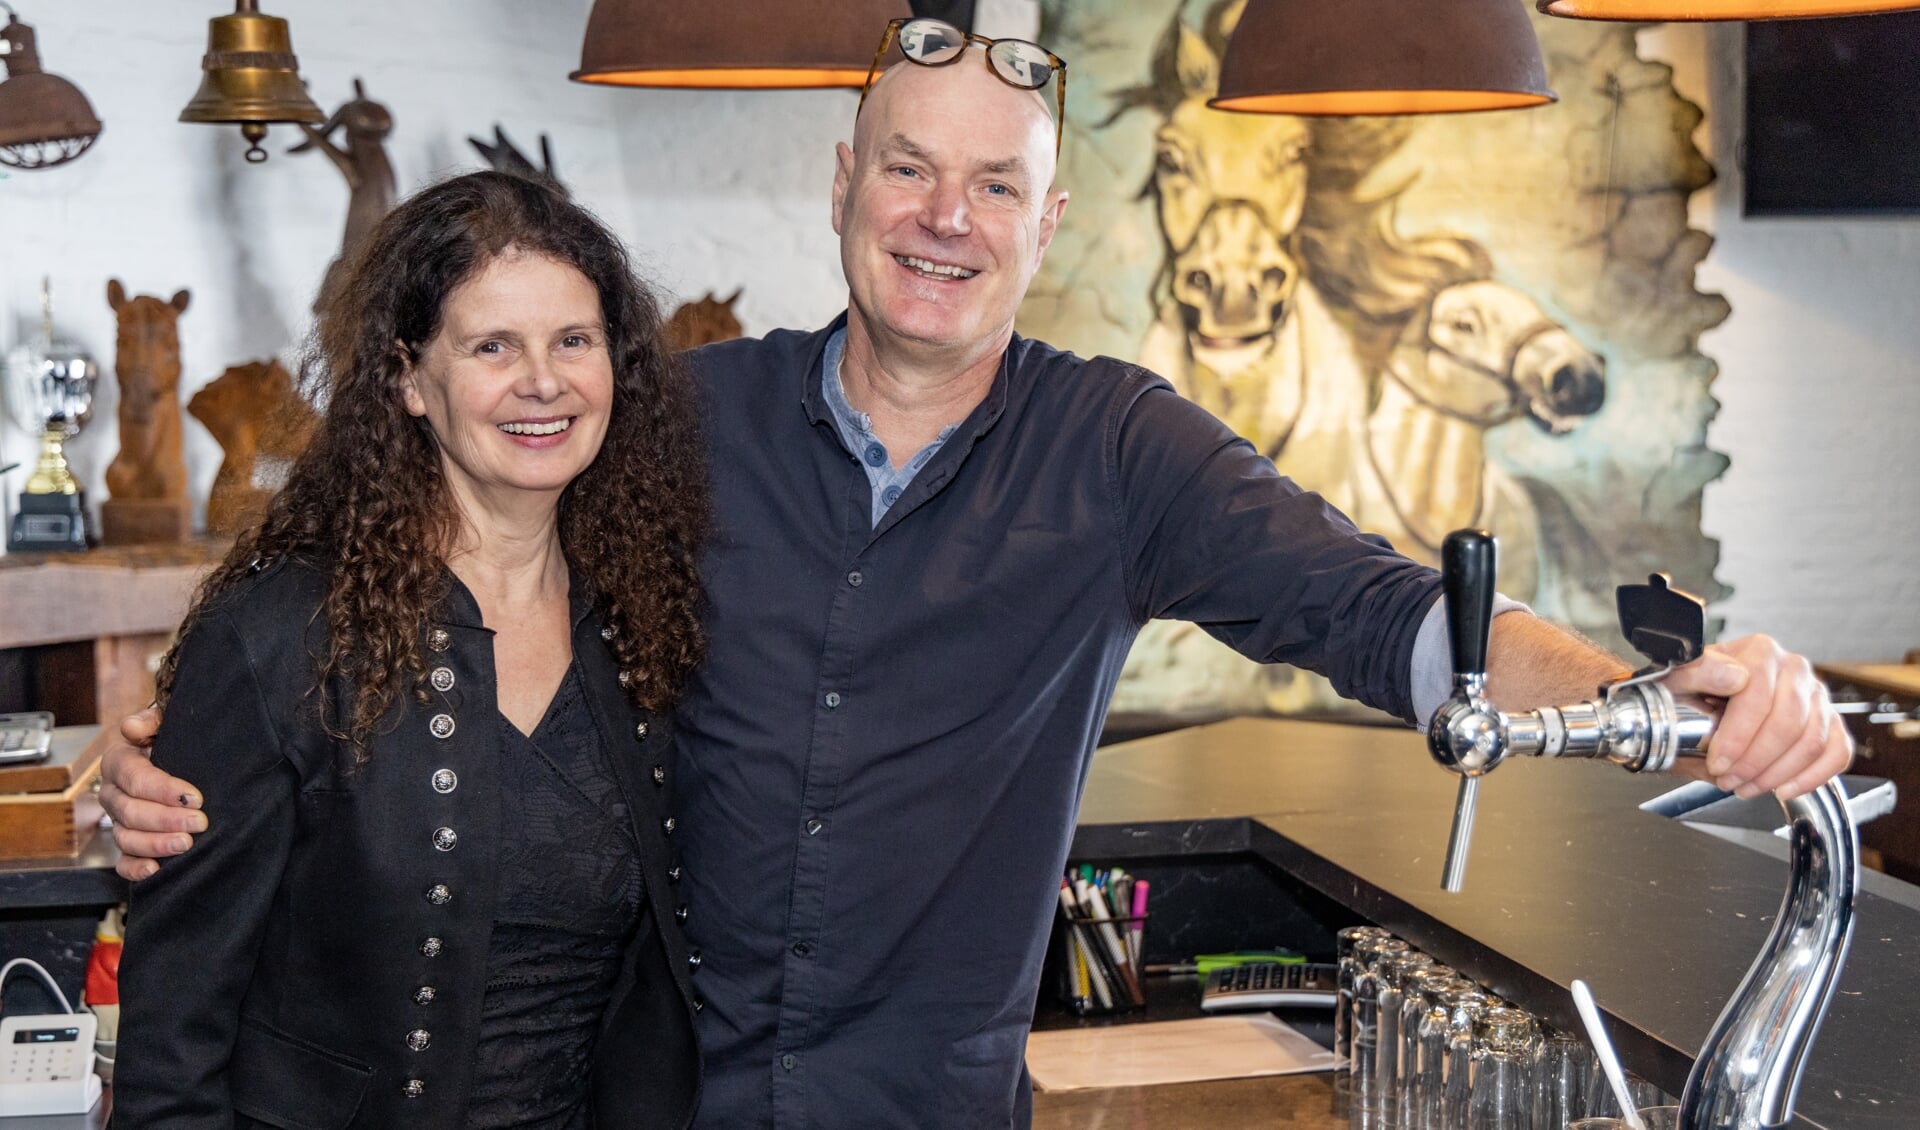 Marij en Antonie Thielen vieren op zaterdag 1 april hun 25-jarig jubileum in Café-zaal 't Veule.